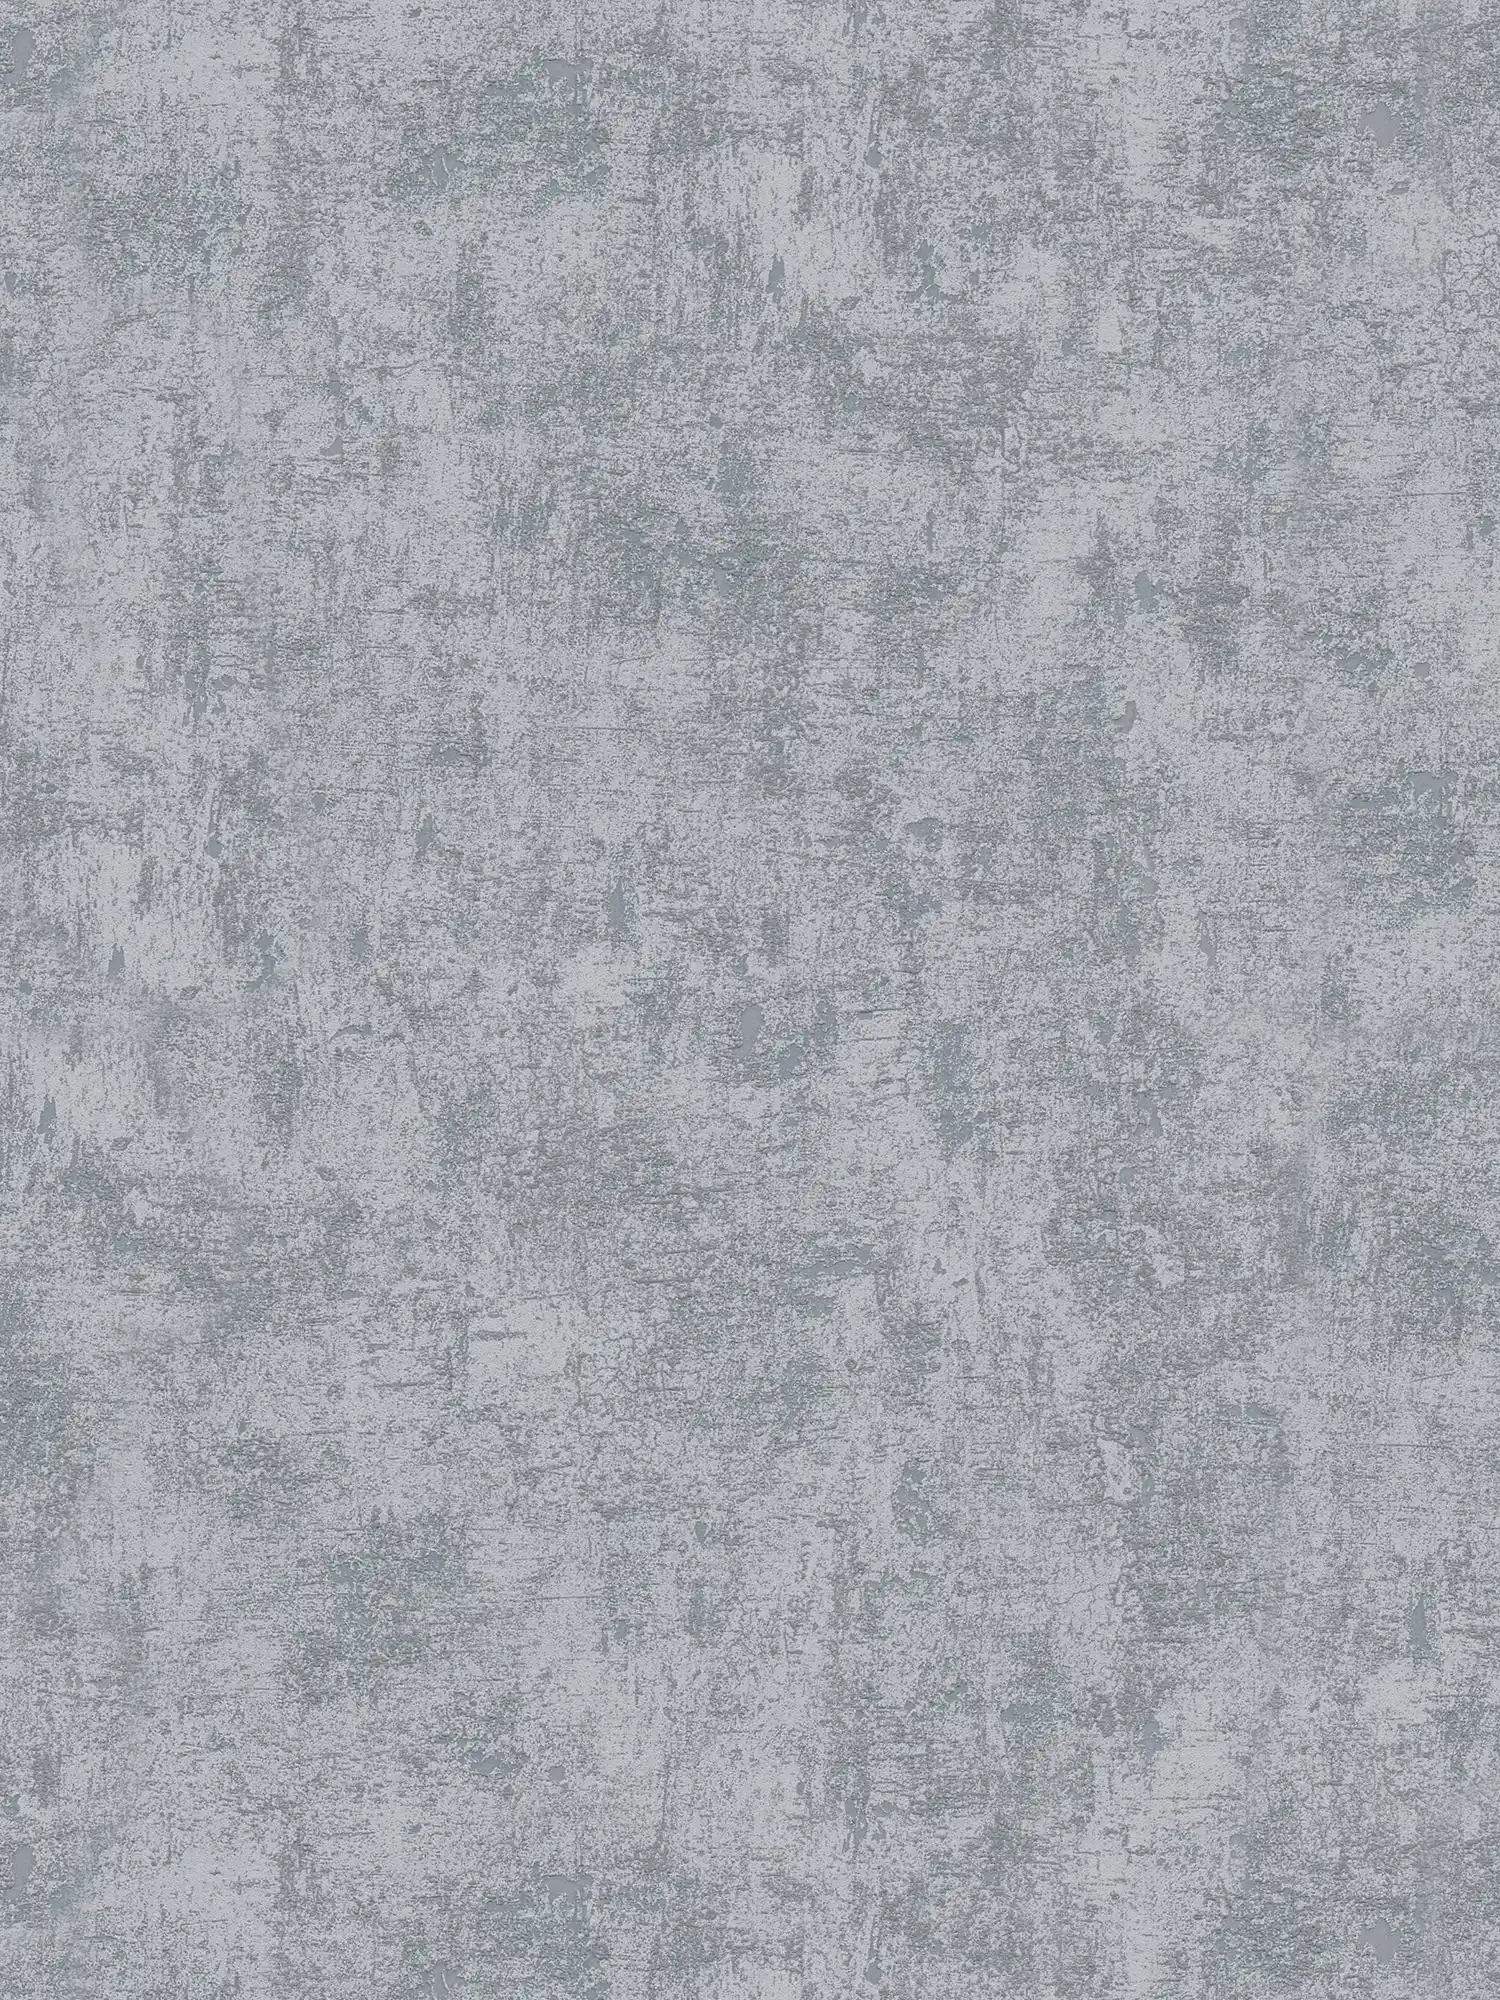 Donker vliesbehang met betonlook - grijs
